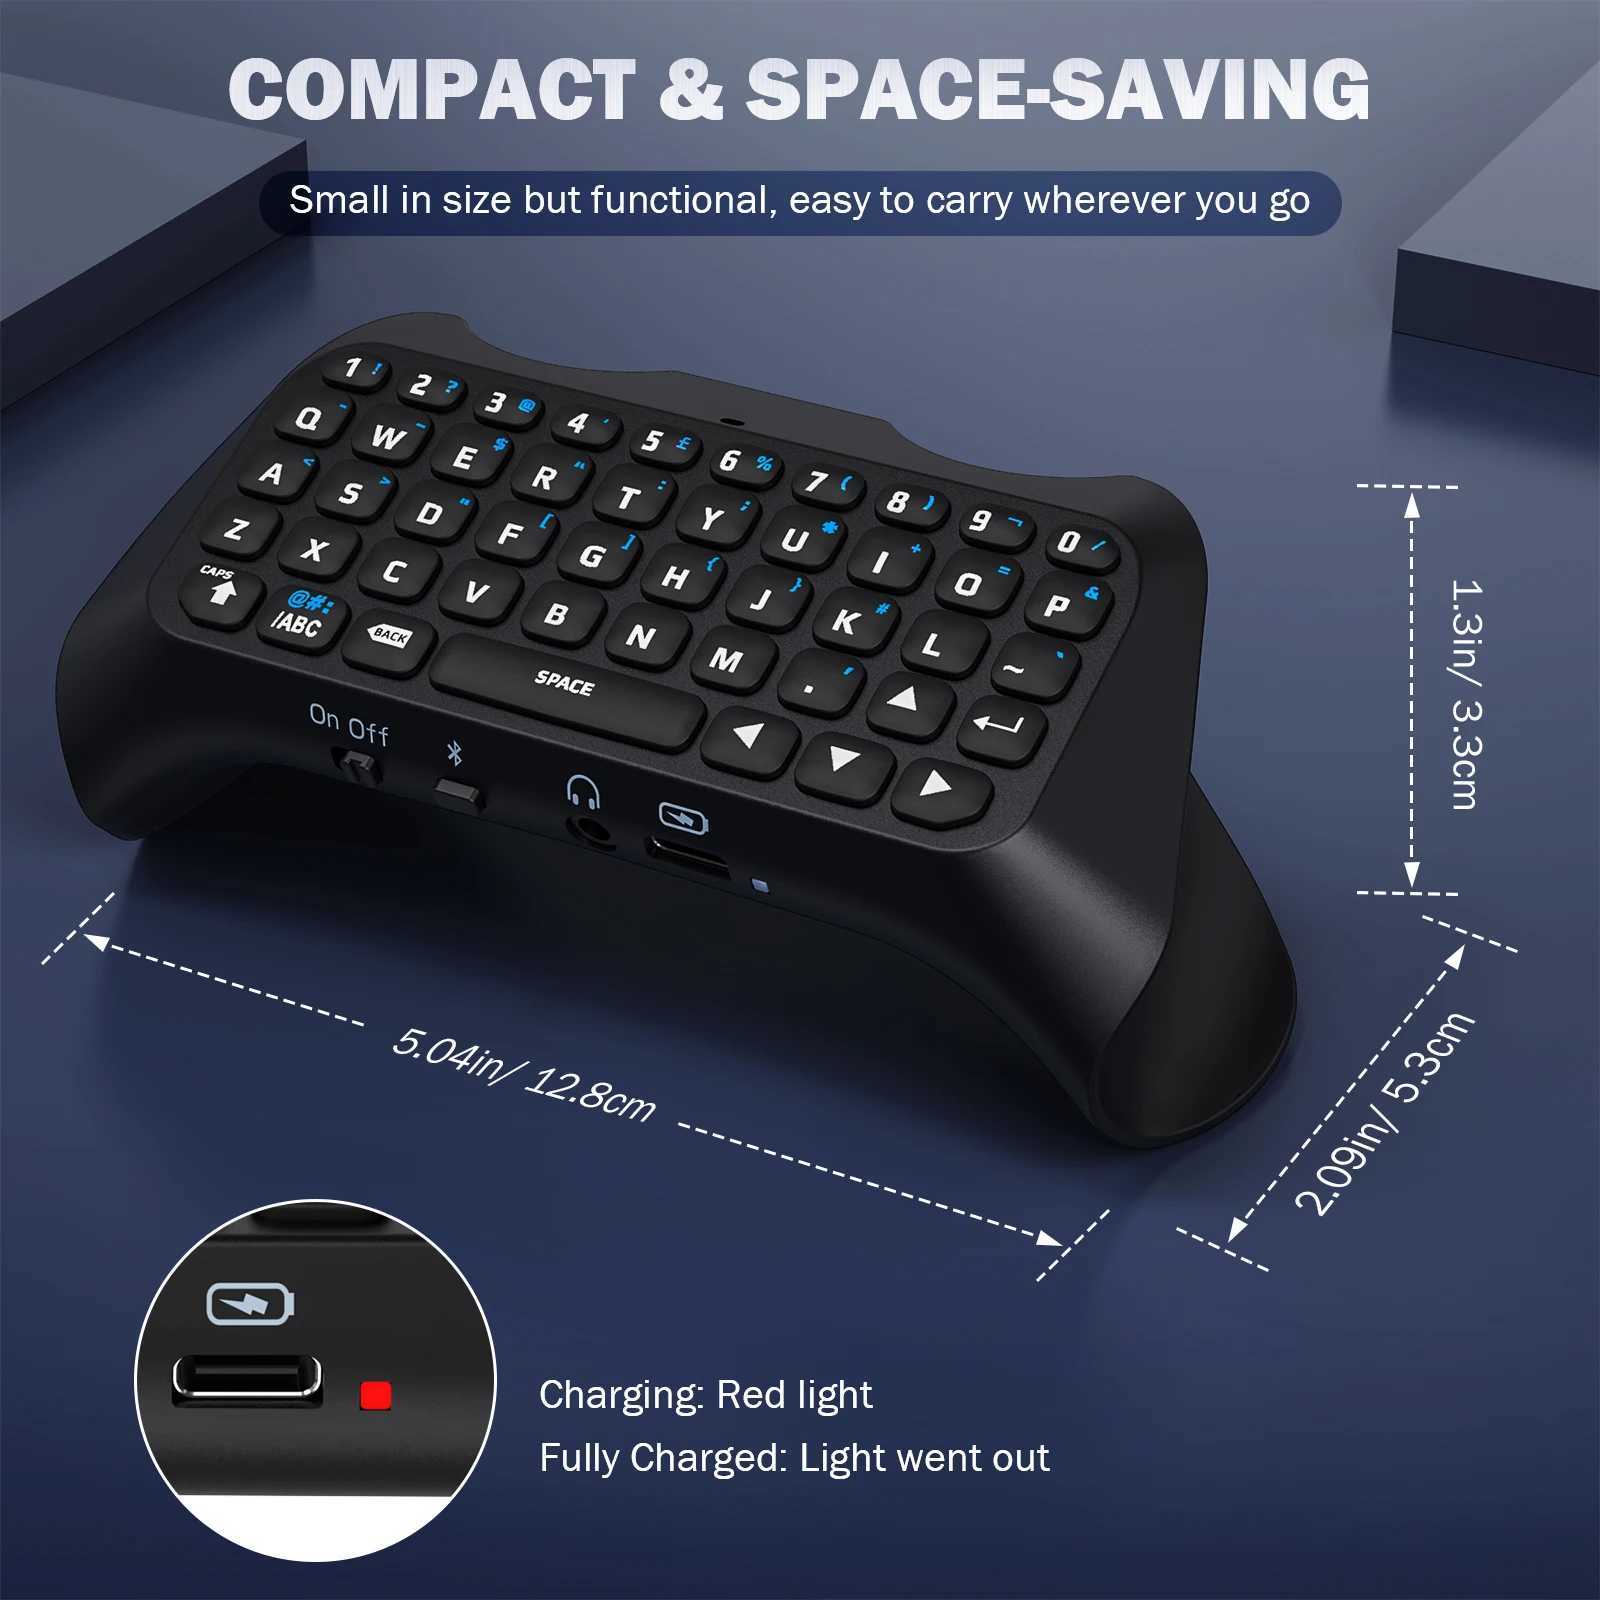 ゲームコントローラージョイスティック5 controllerps5 bluetoothワイヤレスミニチャットパッドプレイステーションコントロールガームキーパッドスピーカーYQ240126用のMokoキーボード